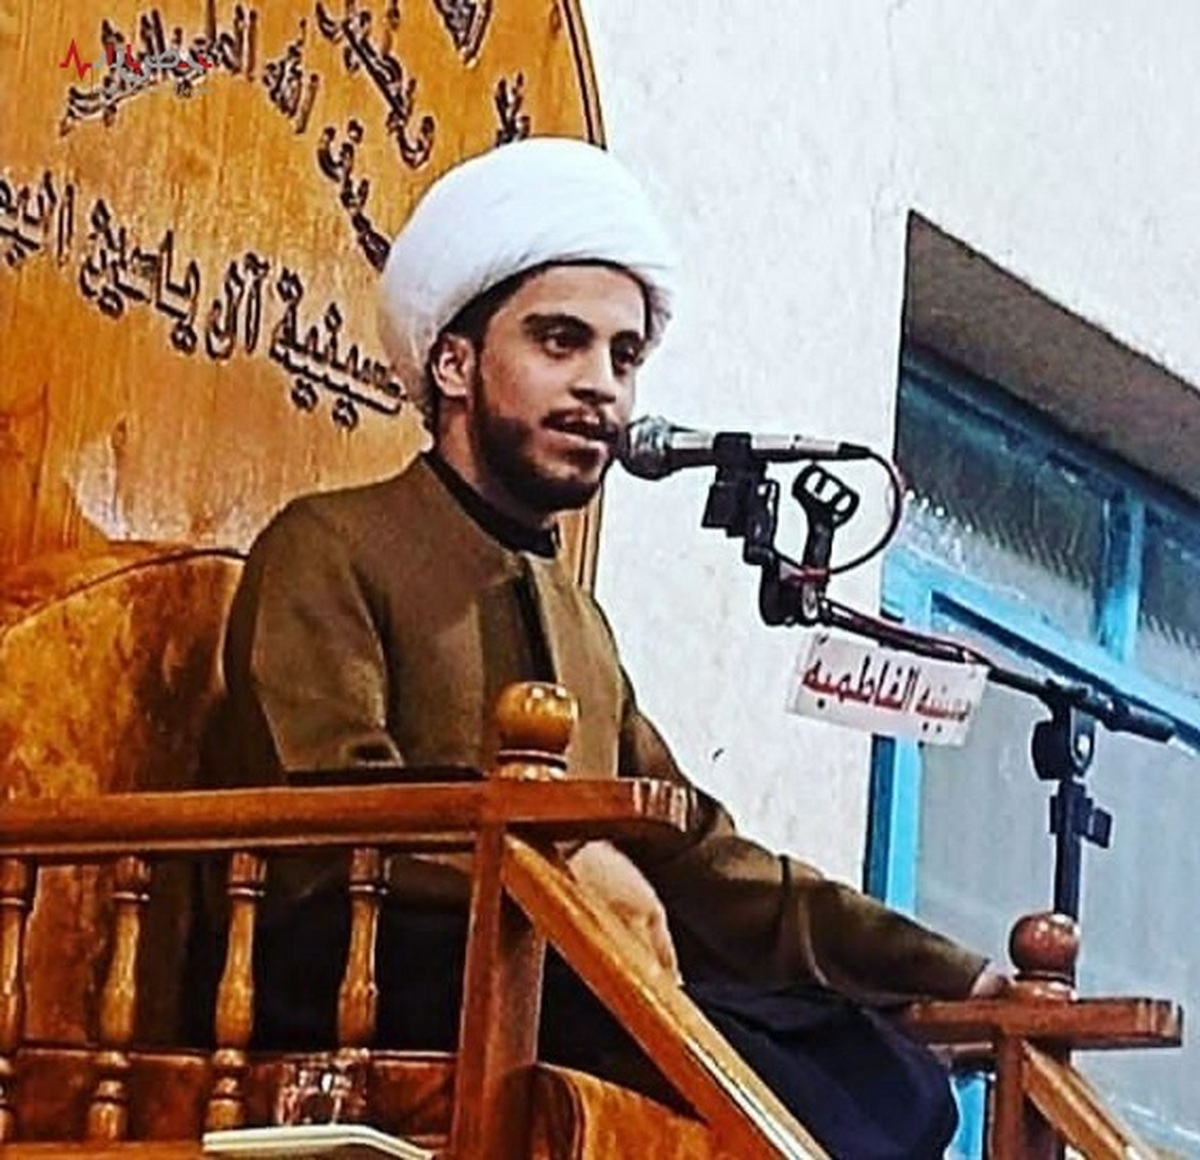 بیوگرافی شیخ کمیل احمدی؛ روحانی خوزستانی که در اهواز کشته شد+تصاویر